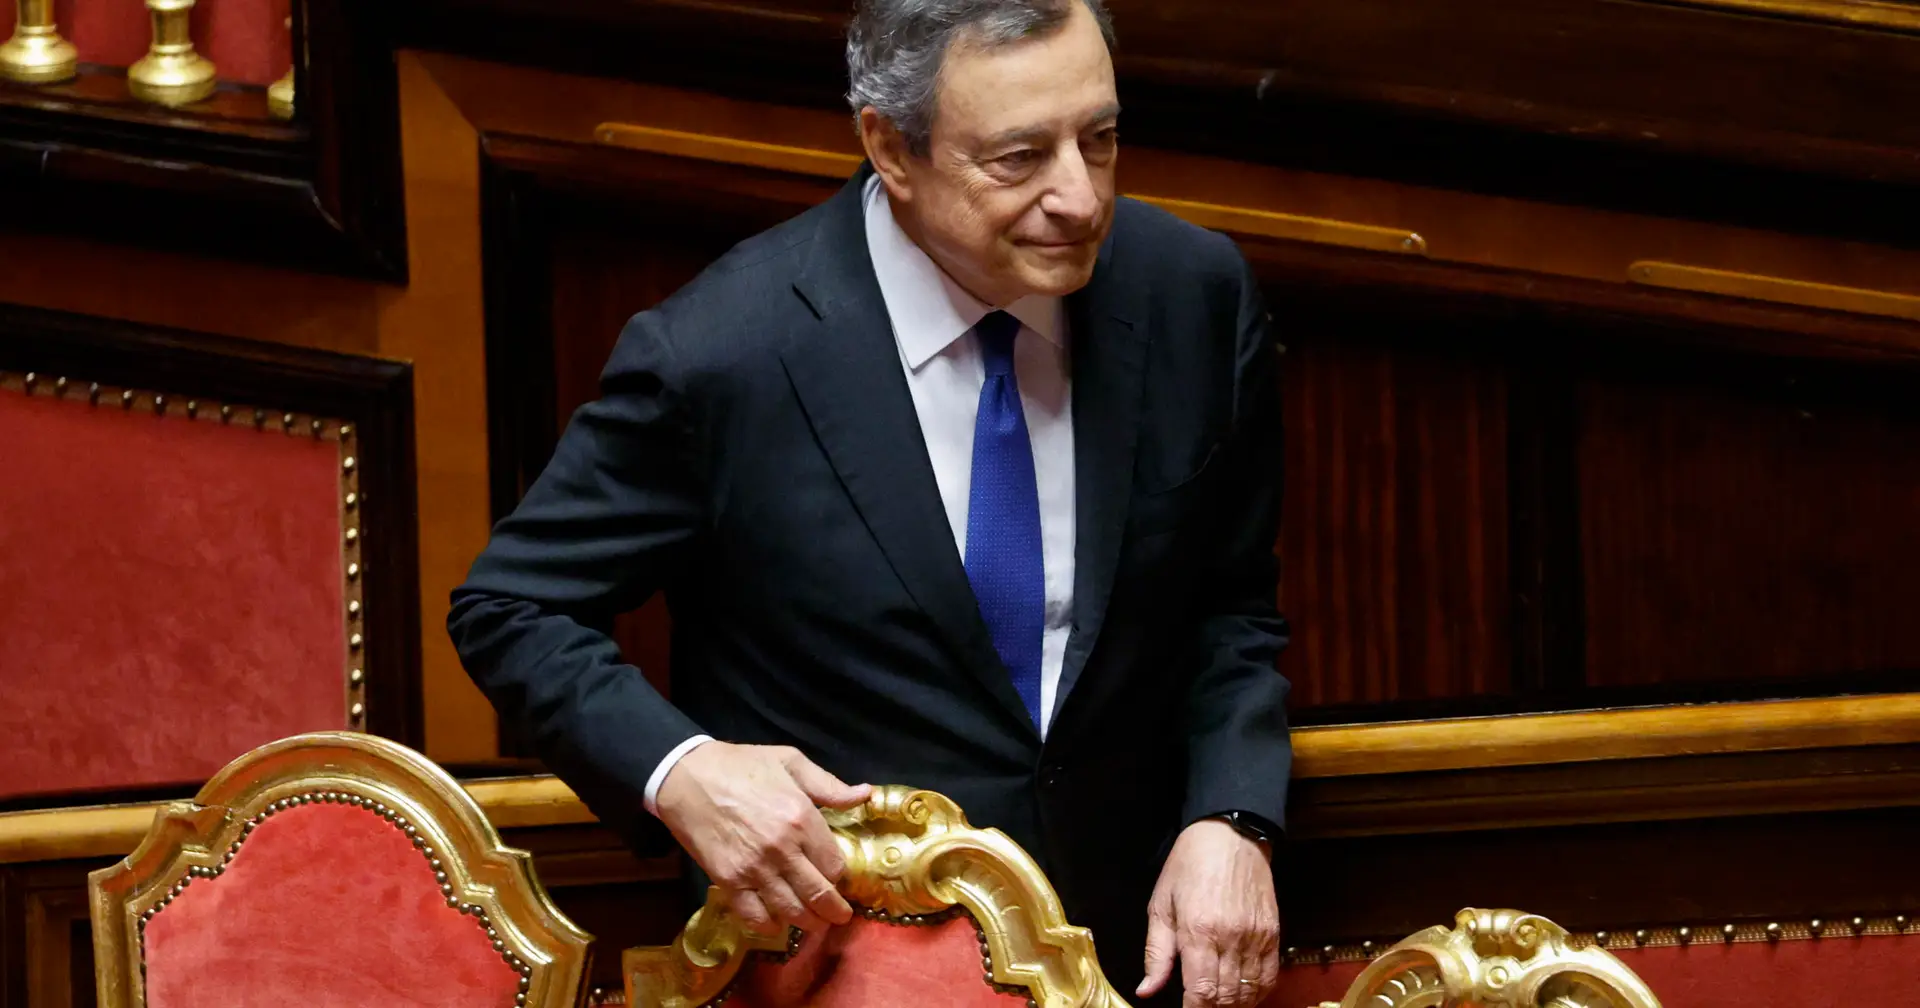 Crise em Itália. Mario Draghi não vai apresentar esta quarta-feira a demissão